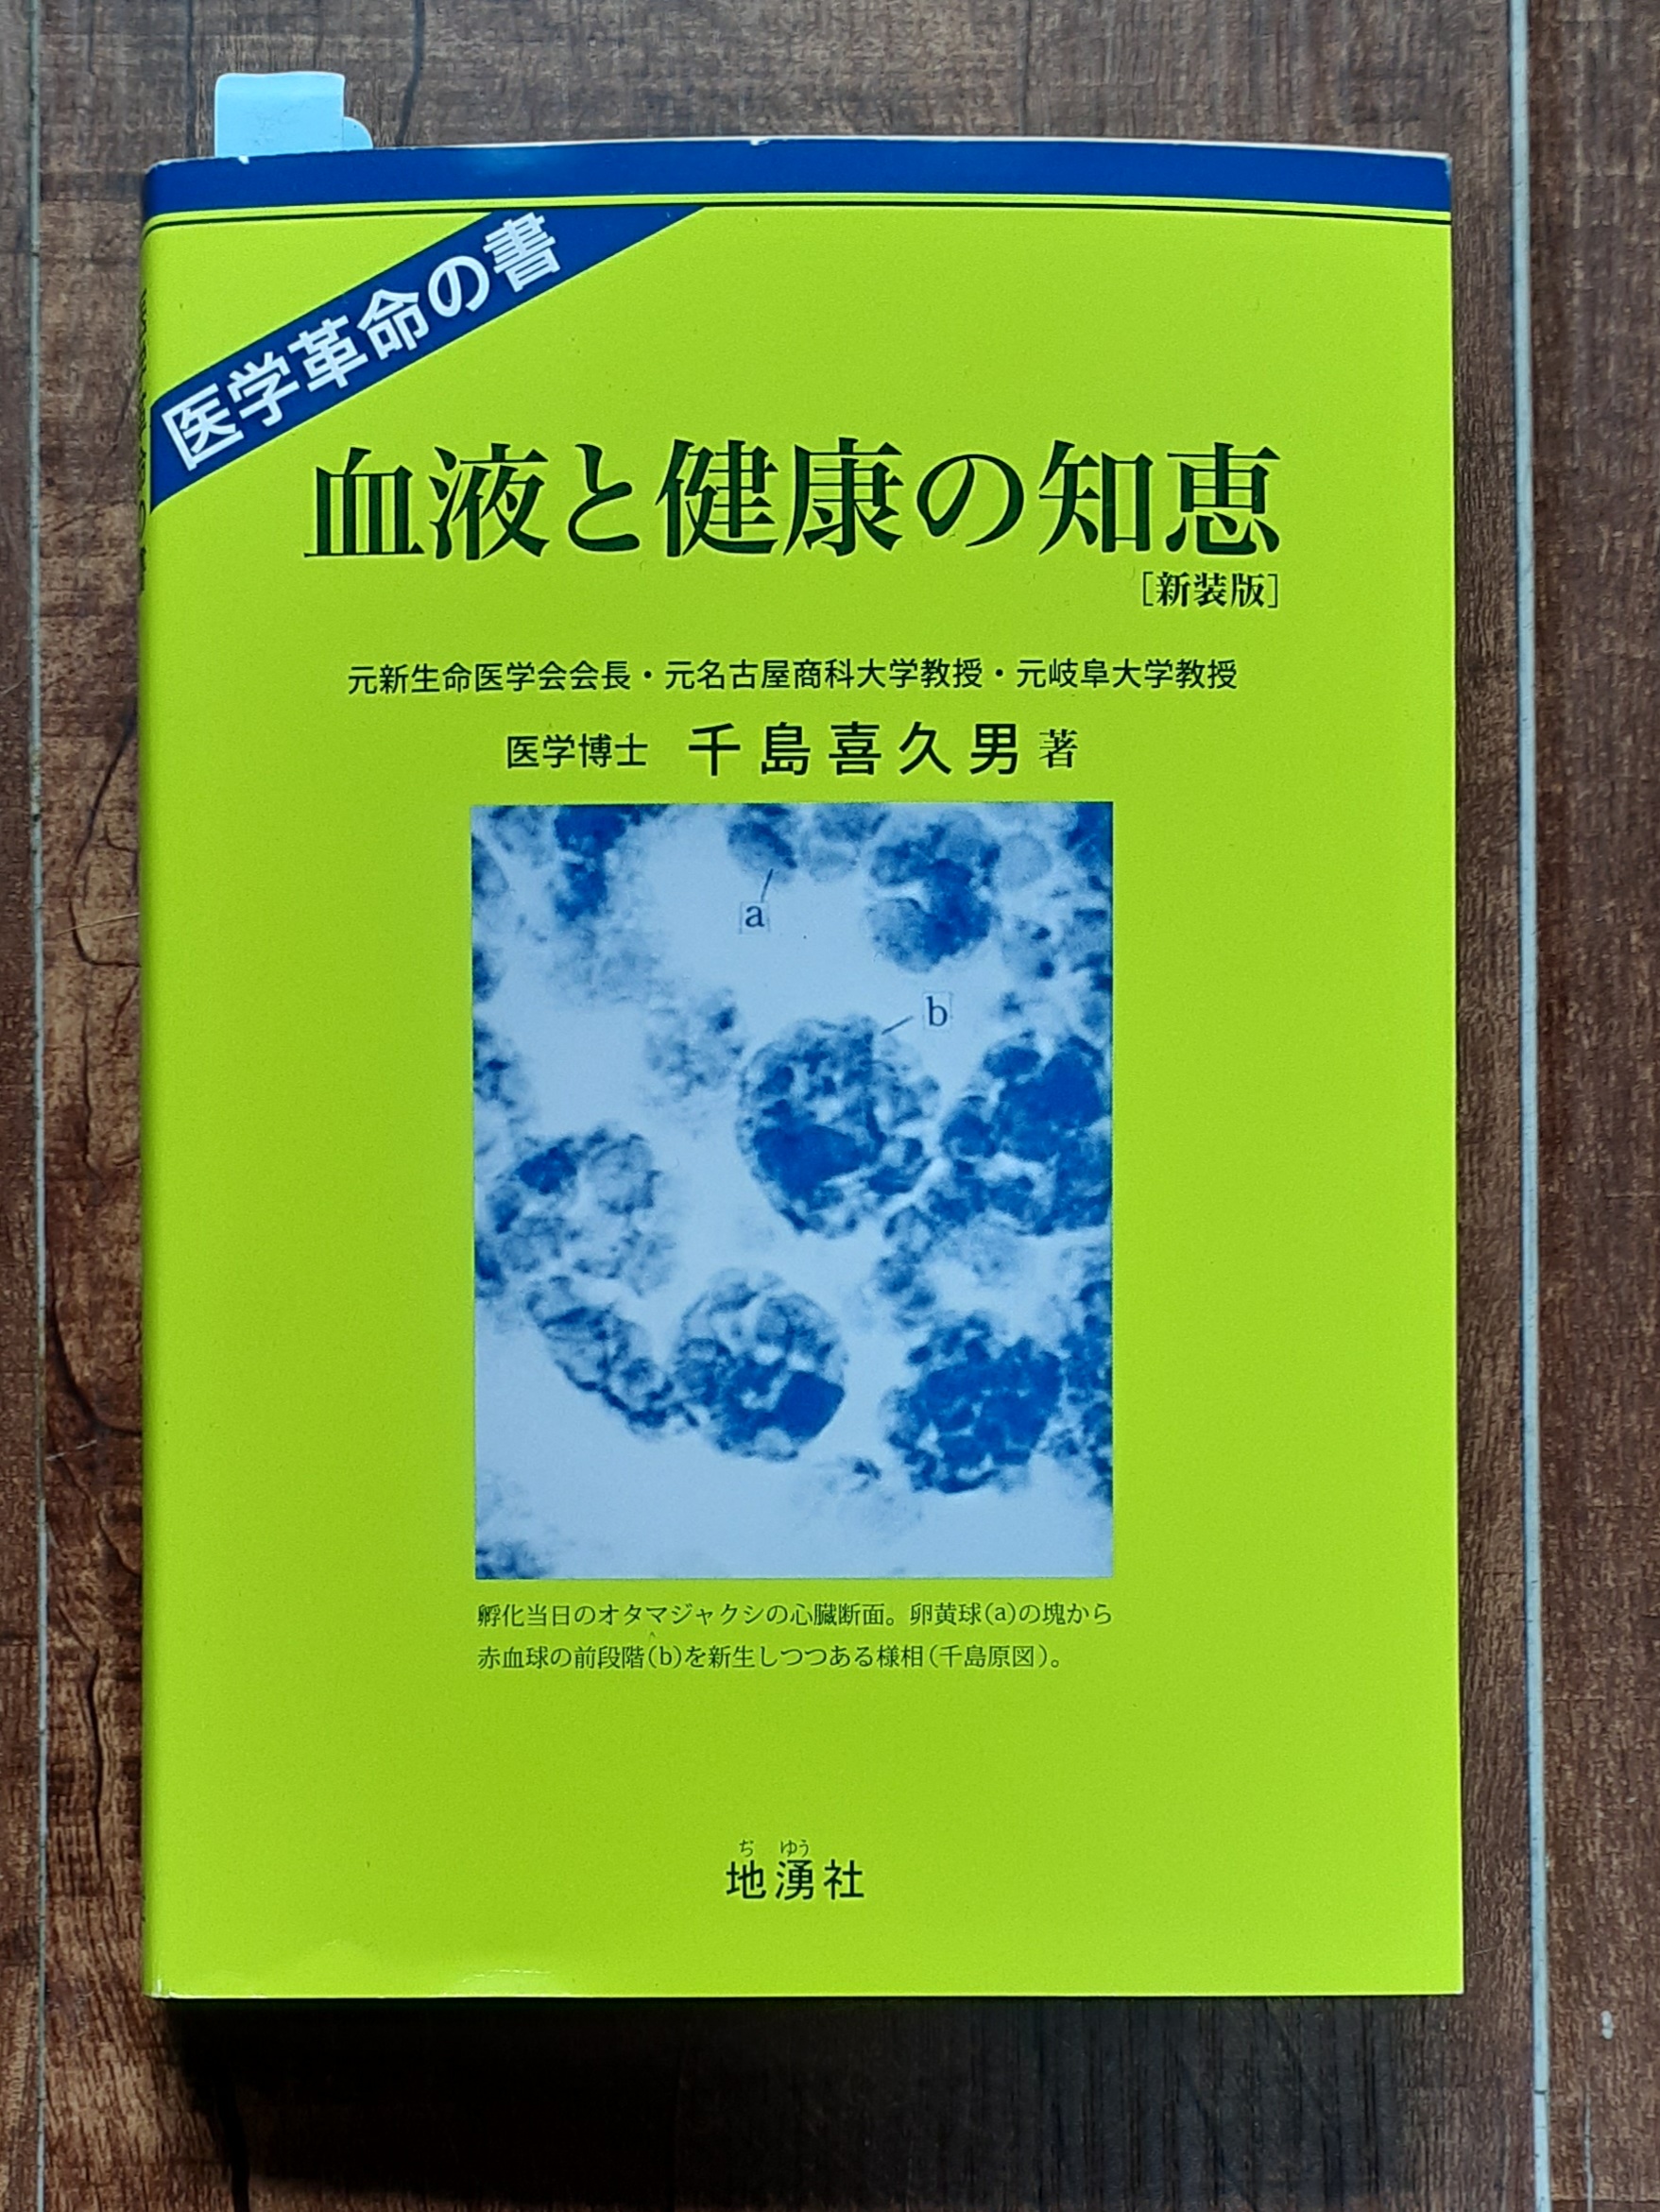 千島喜久男医学博士の著書『血液と健康の知恵』を読んで | 森林